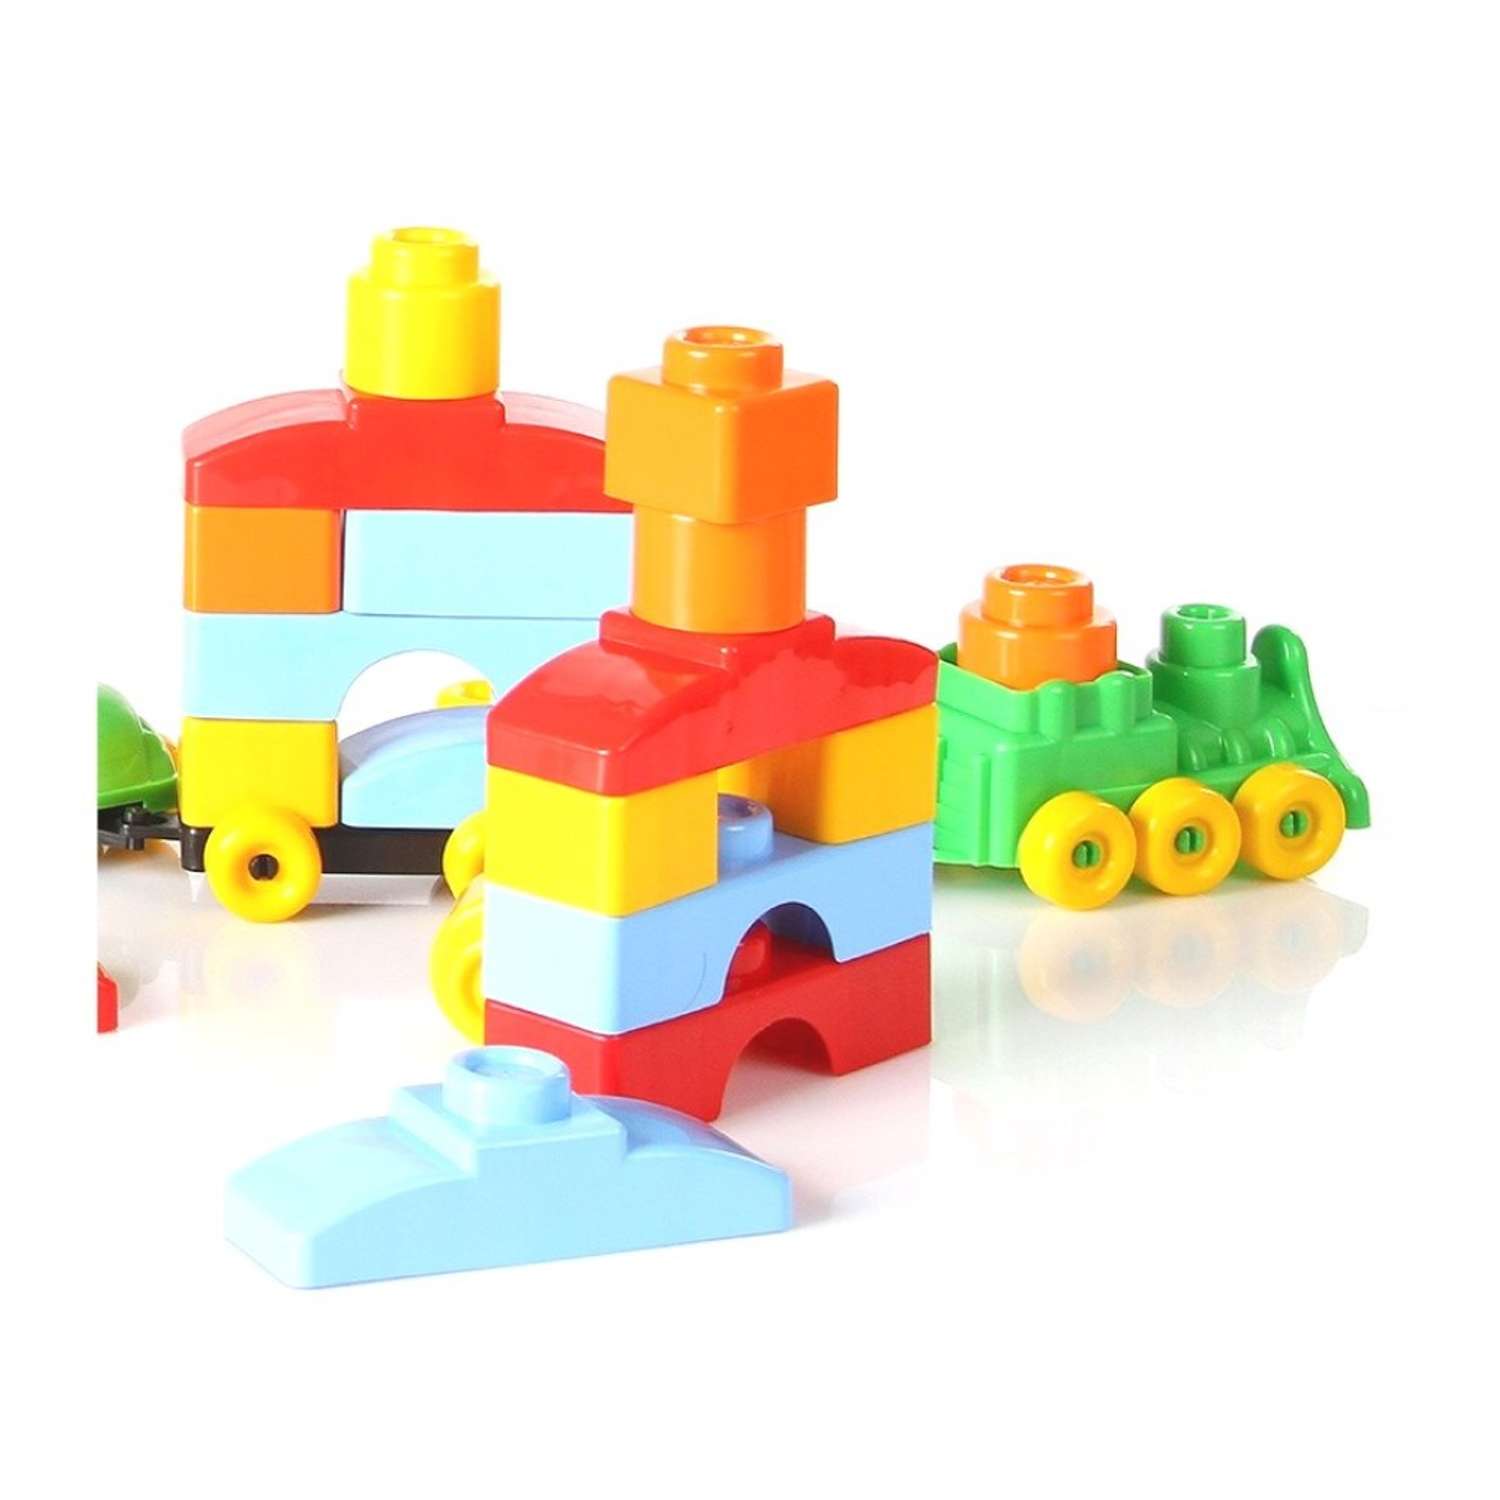 Развивающие игрушки БИПЛАНТ для малышей конструктор Кноп-Кнопыч 61 деталь + Пирамидка малая + Команда КВА - фото 4